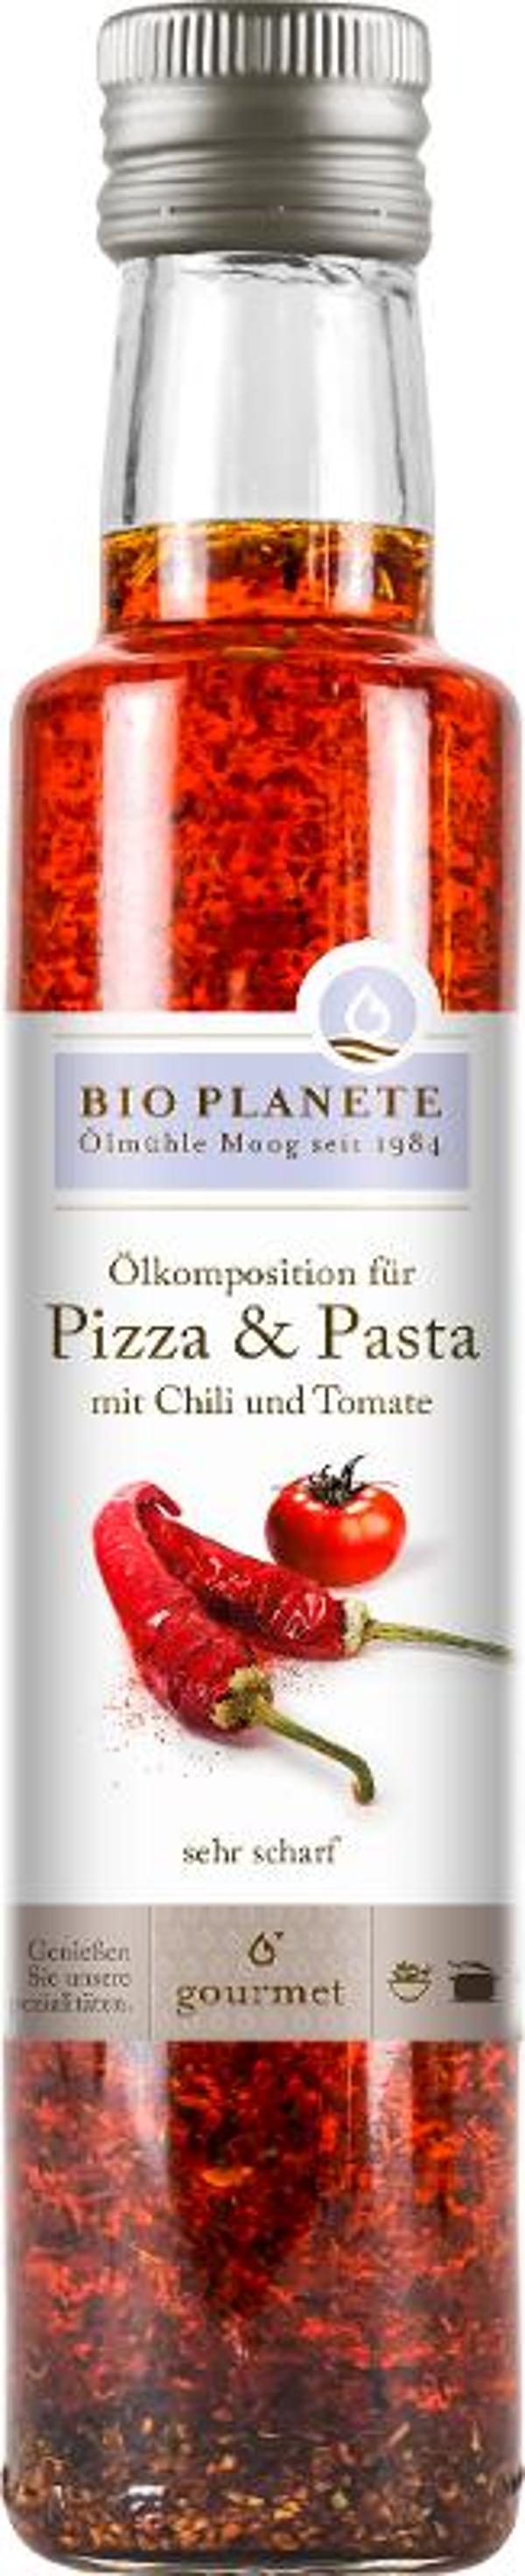 Produktfoto zu Pizza & Pasta-Öl 250 ml